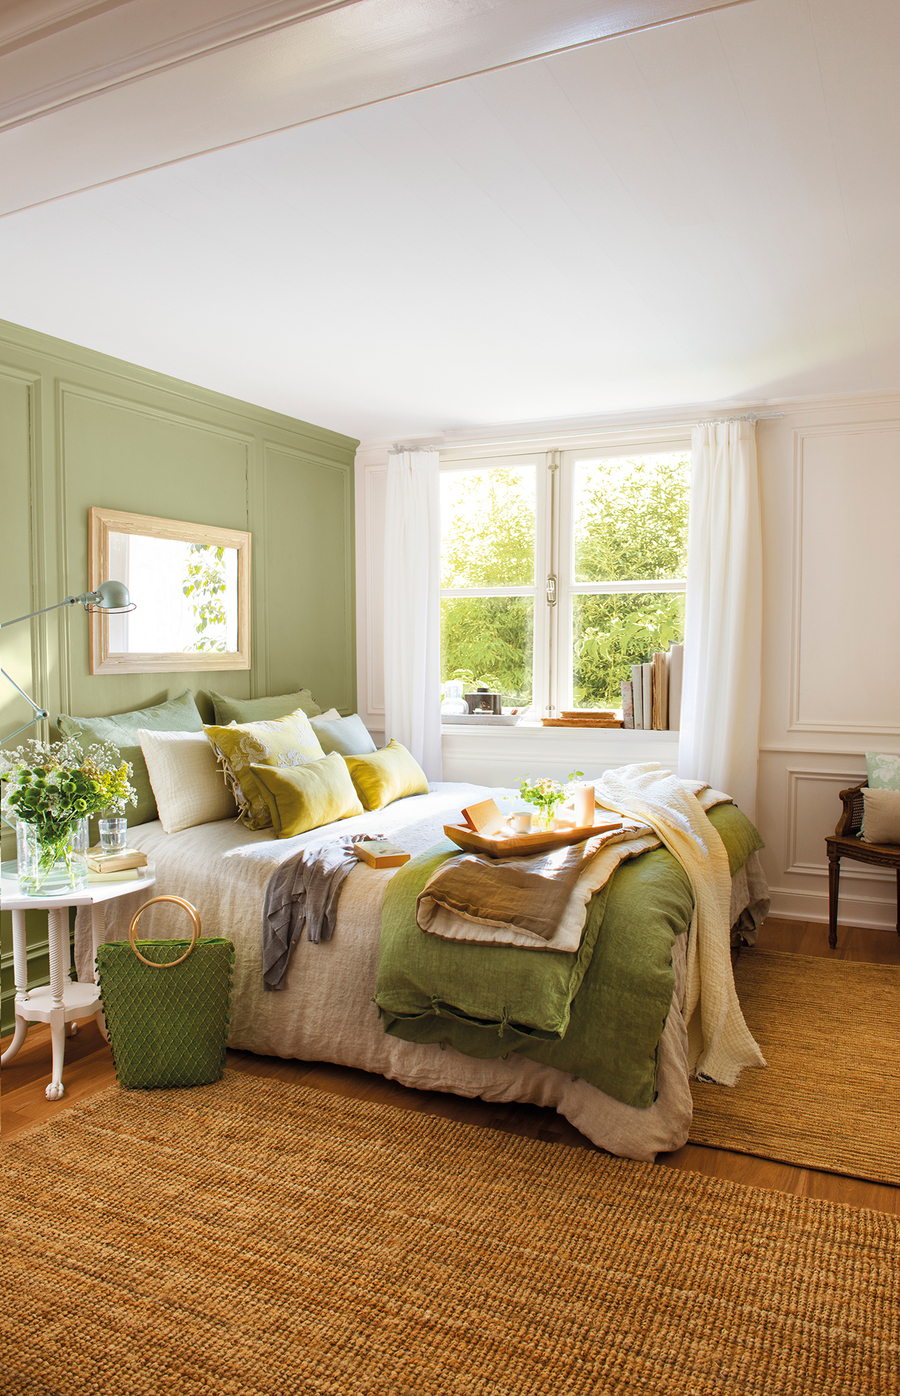 Dormitorio de techo blanco, piso de madera, pared blanca y pared de acento verde claro. La ropa de cama es de diferentes tipos de verde, incluyendo los siete cojines y mantas sobre ella. Sobre el suelo hay dos grandes alfombras de yute.